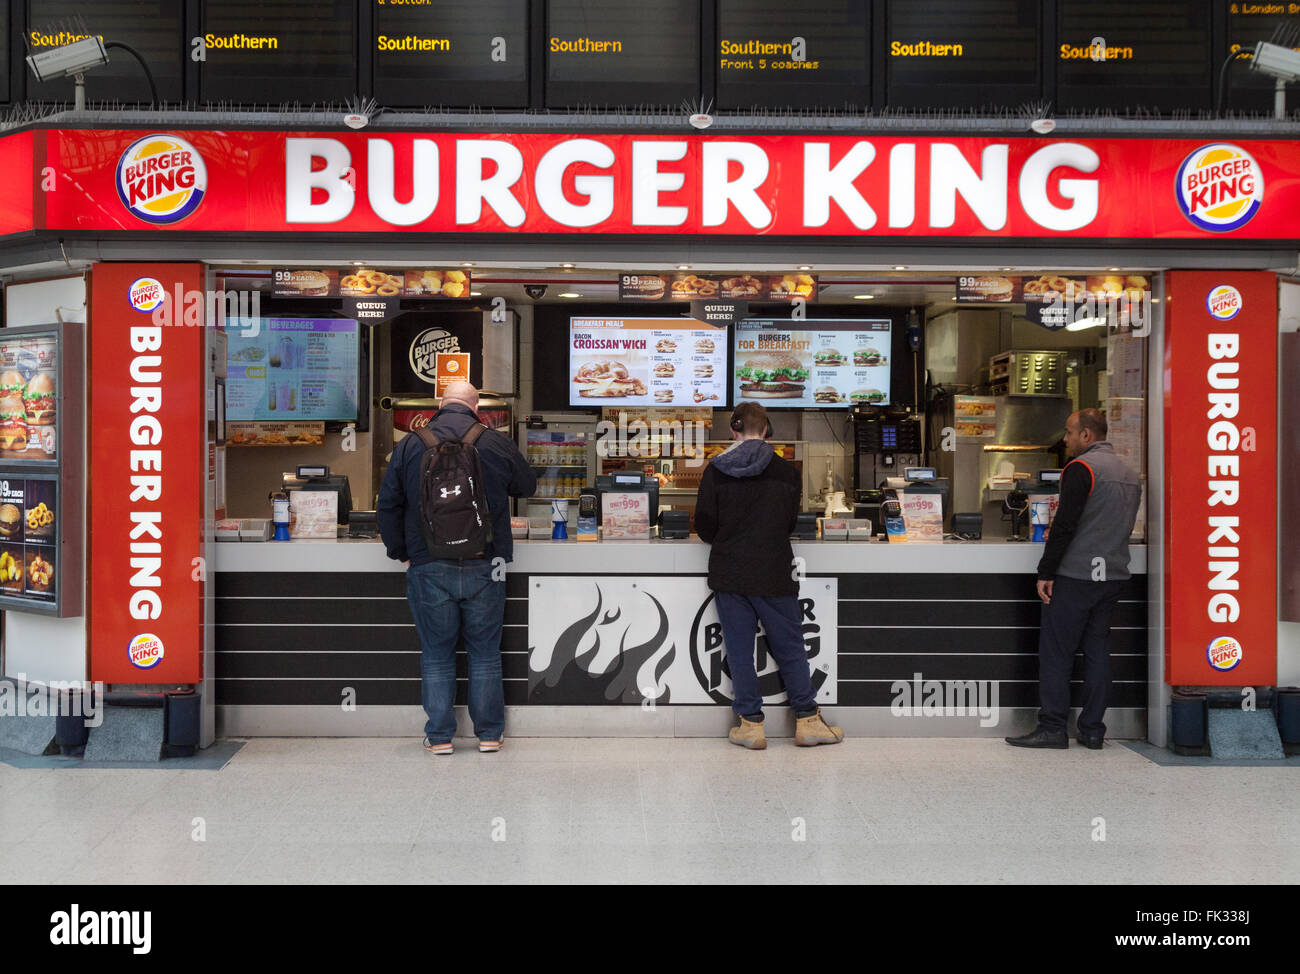 Persone che acquistano alimenti, Burger King, Victoria Station concourse, London REGNO UNITO Foto Stock